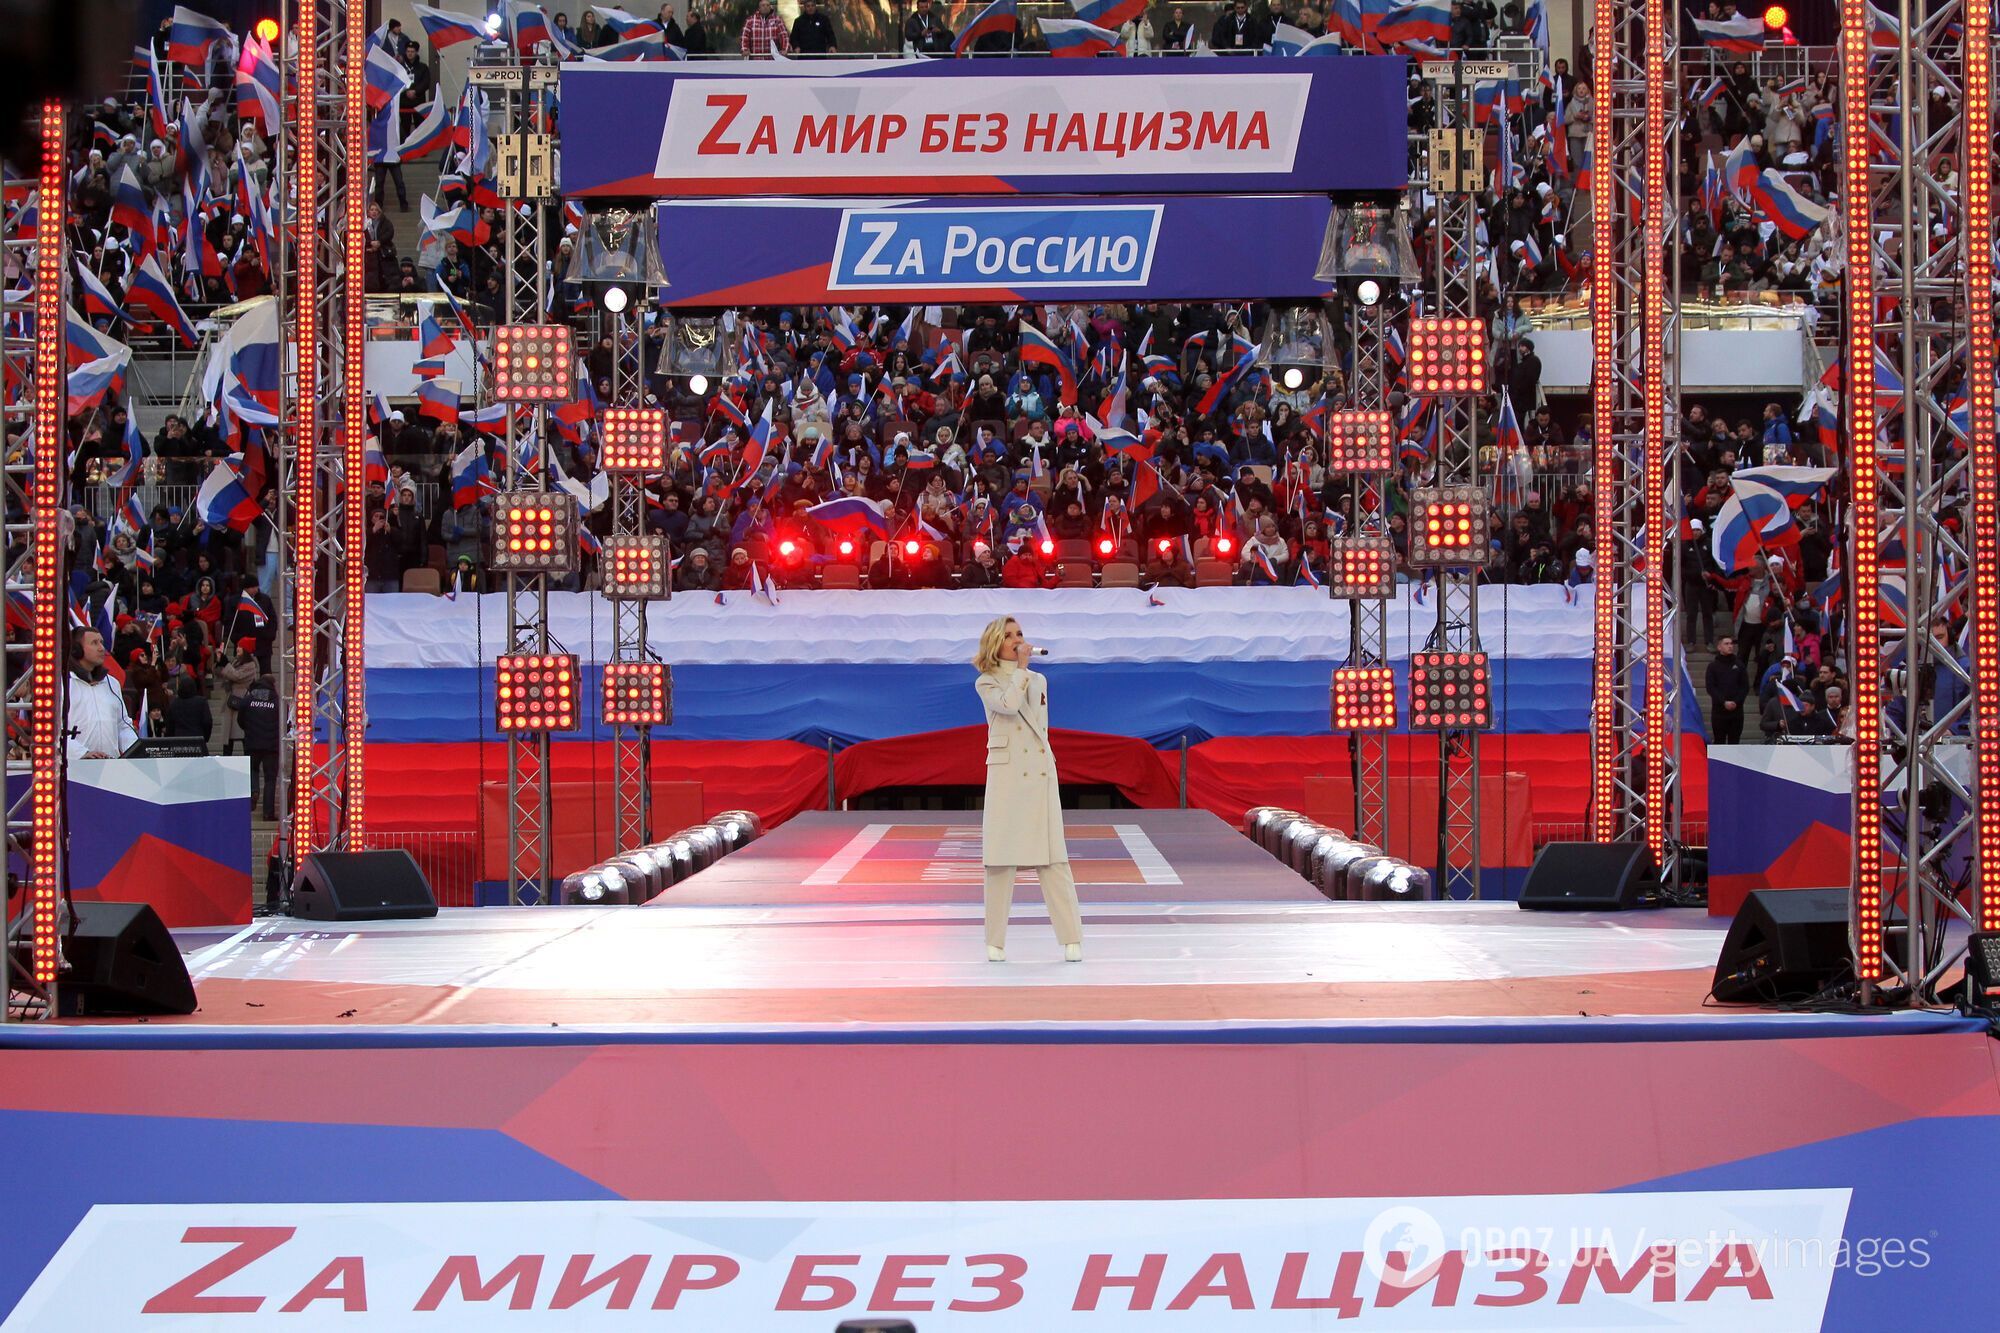 ЕС может ввести санкции против Полины Гагариной за концерт в "Лужниках" к годовщине аннексии Крыма